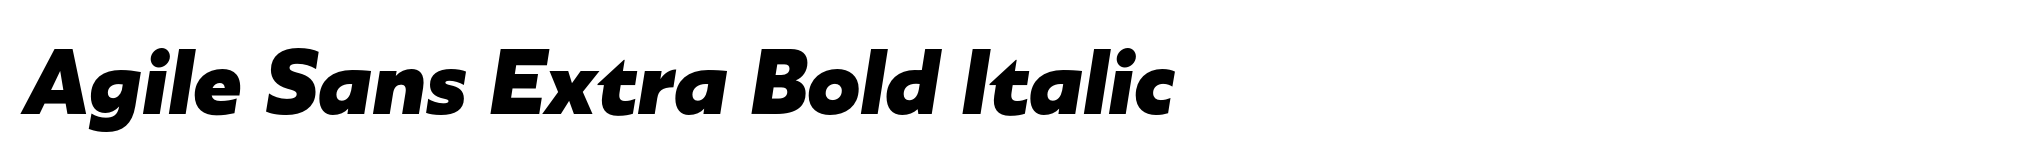 Agile Sans Extra Bold Italic image